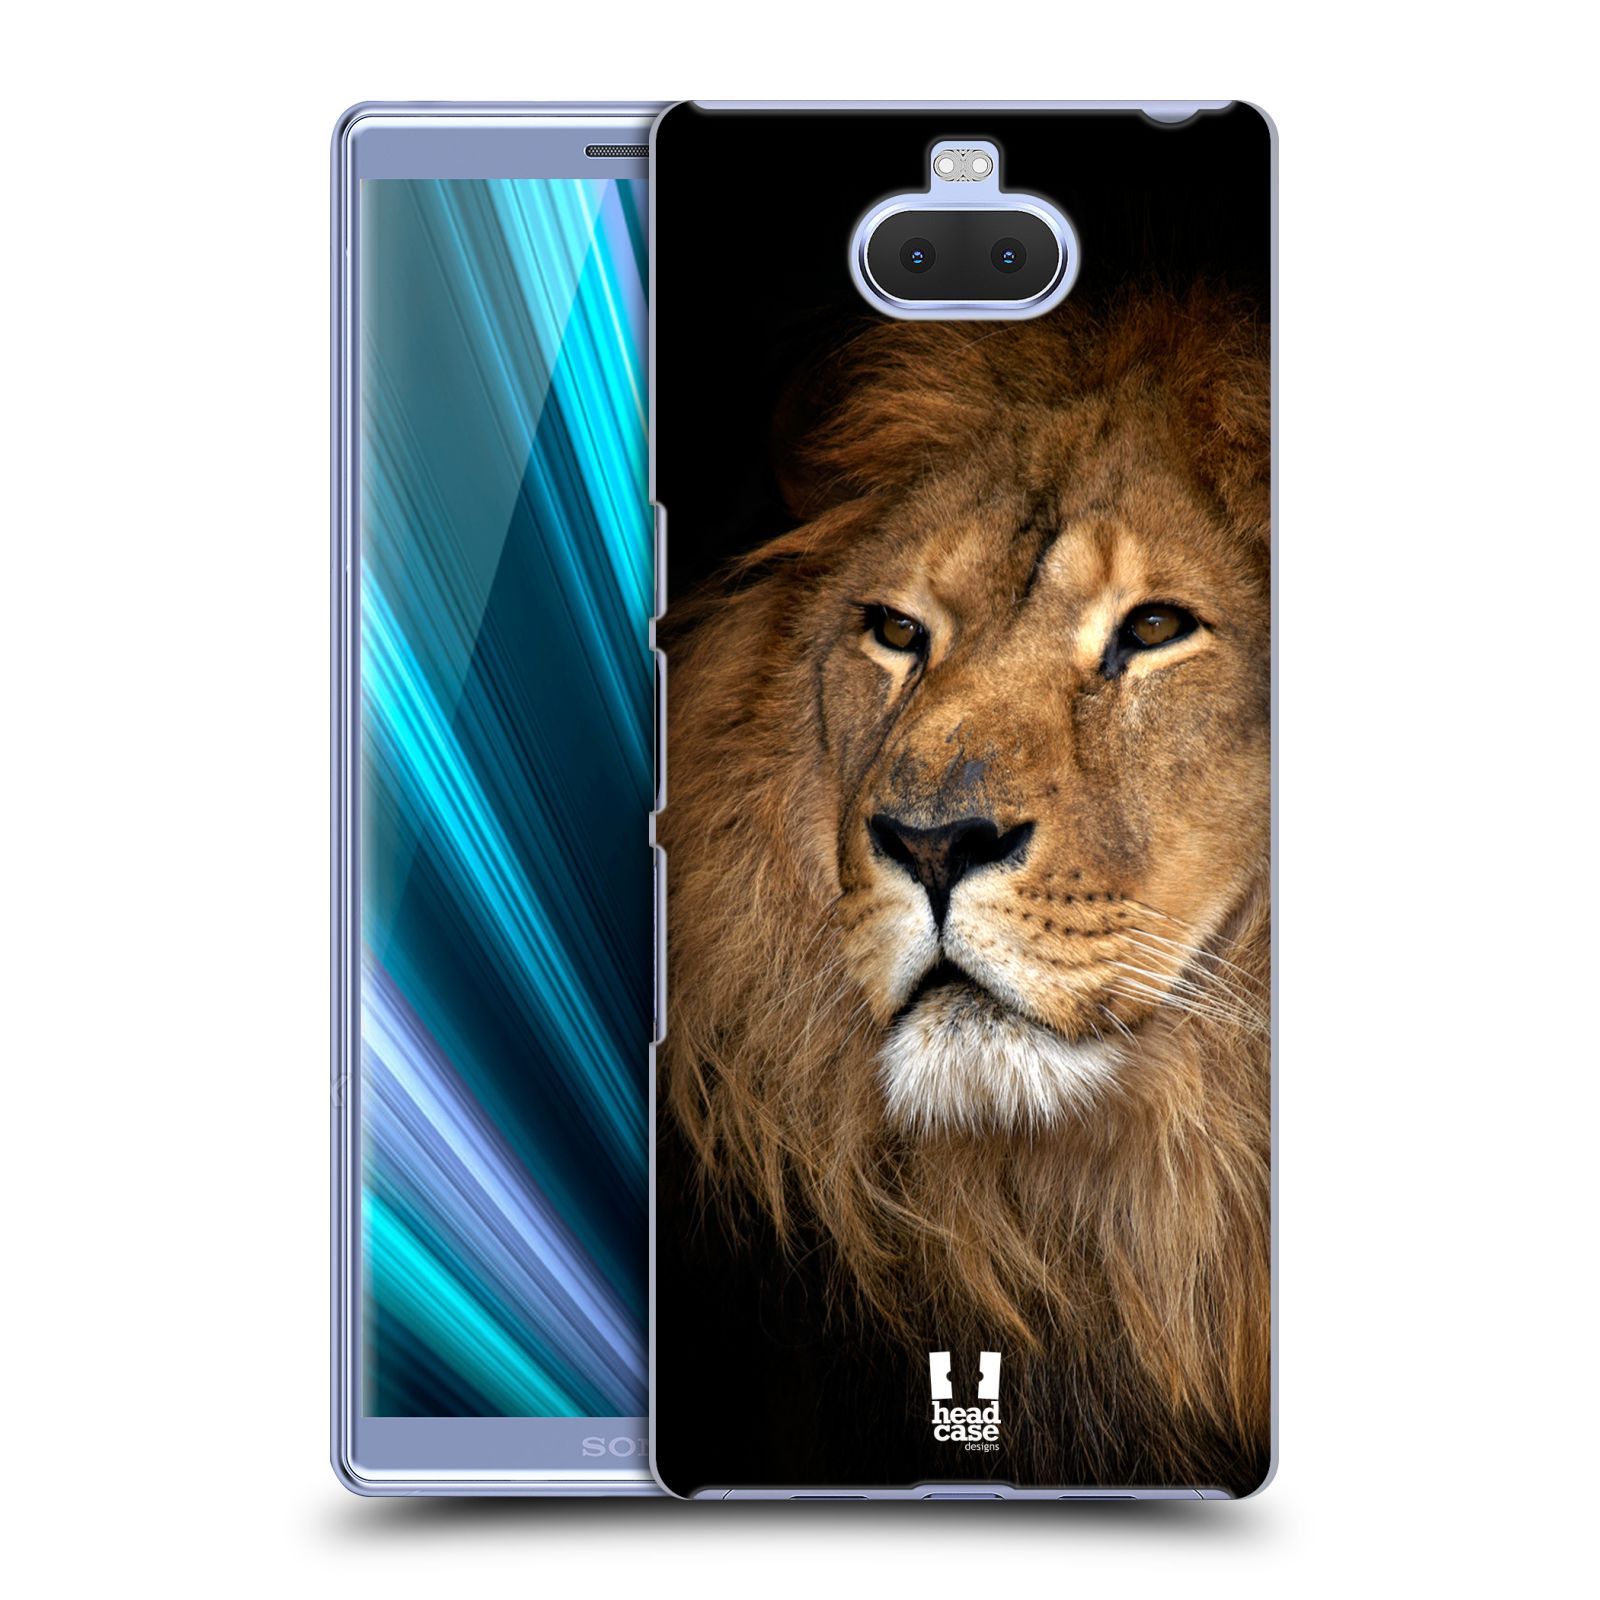 Zadní obal pro mobil Sony Xperia 10 - HEAD CASE - Svět zvířat král zvířat Lev